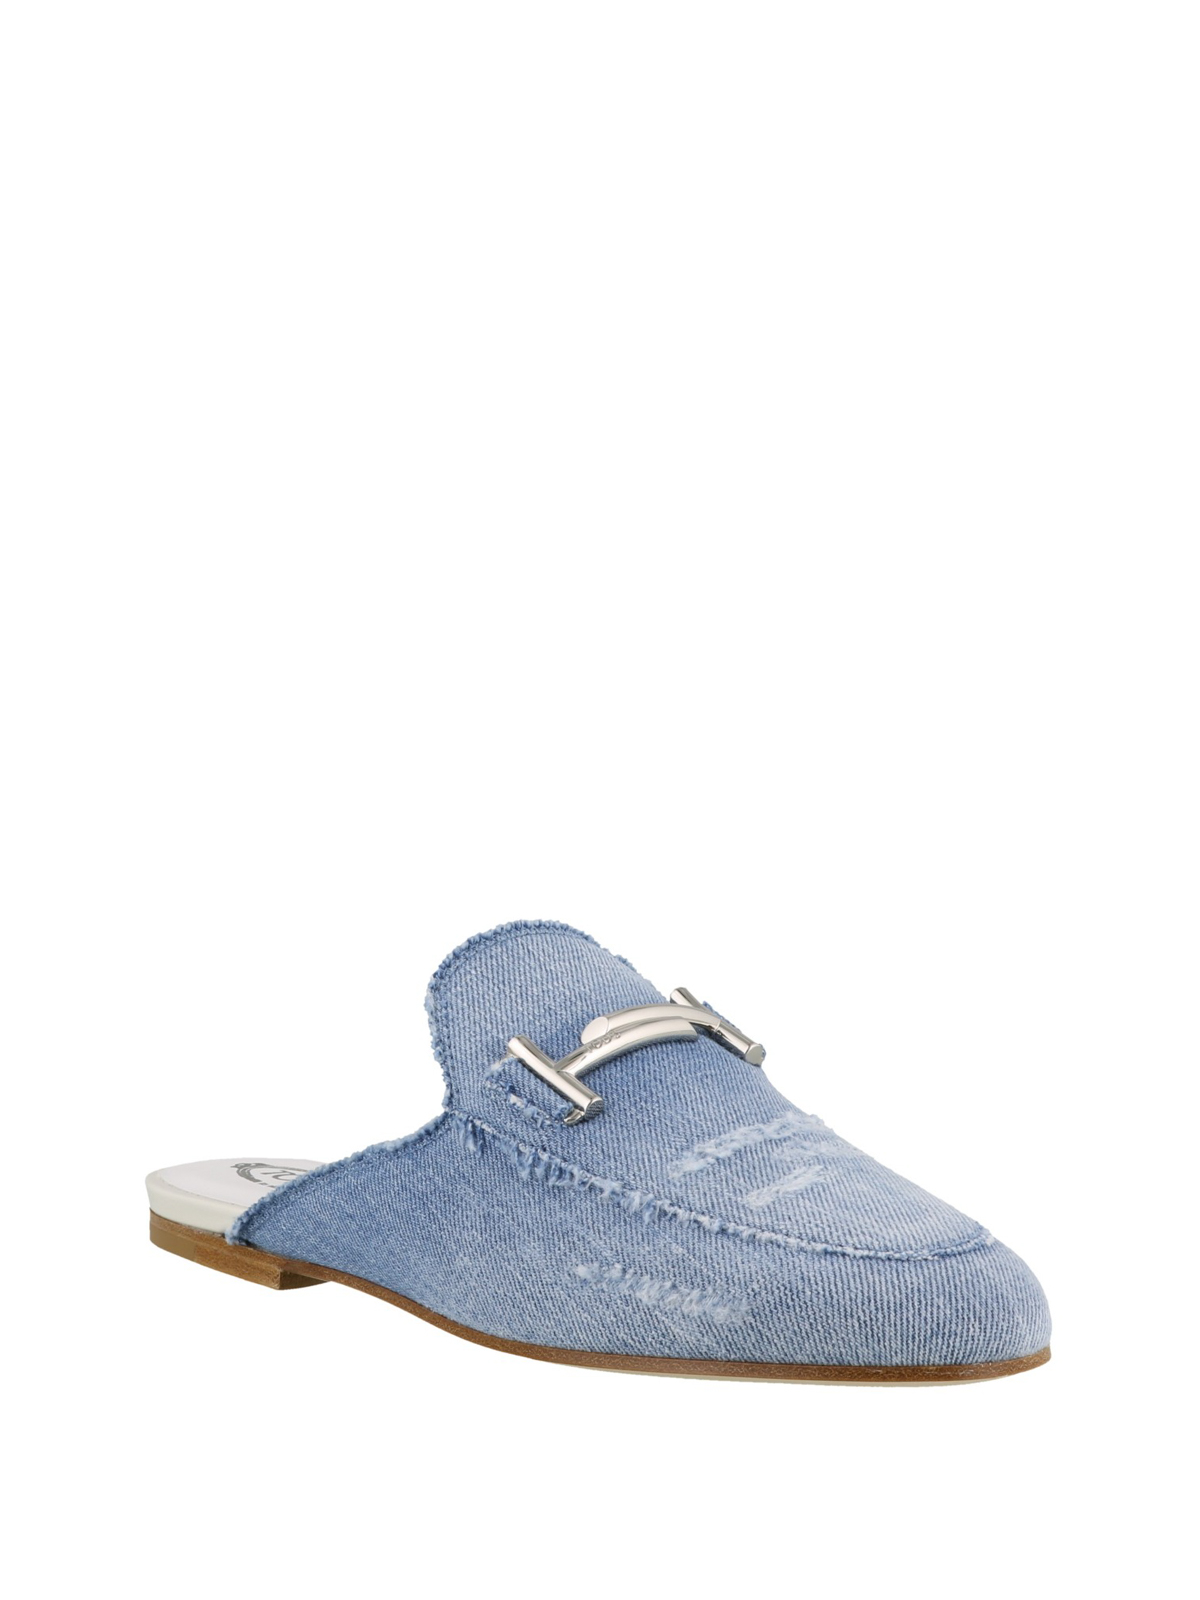 Double T blue denim mules - mules shoes 